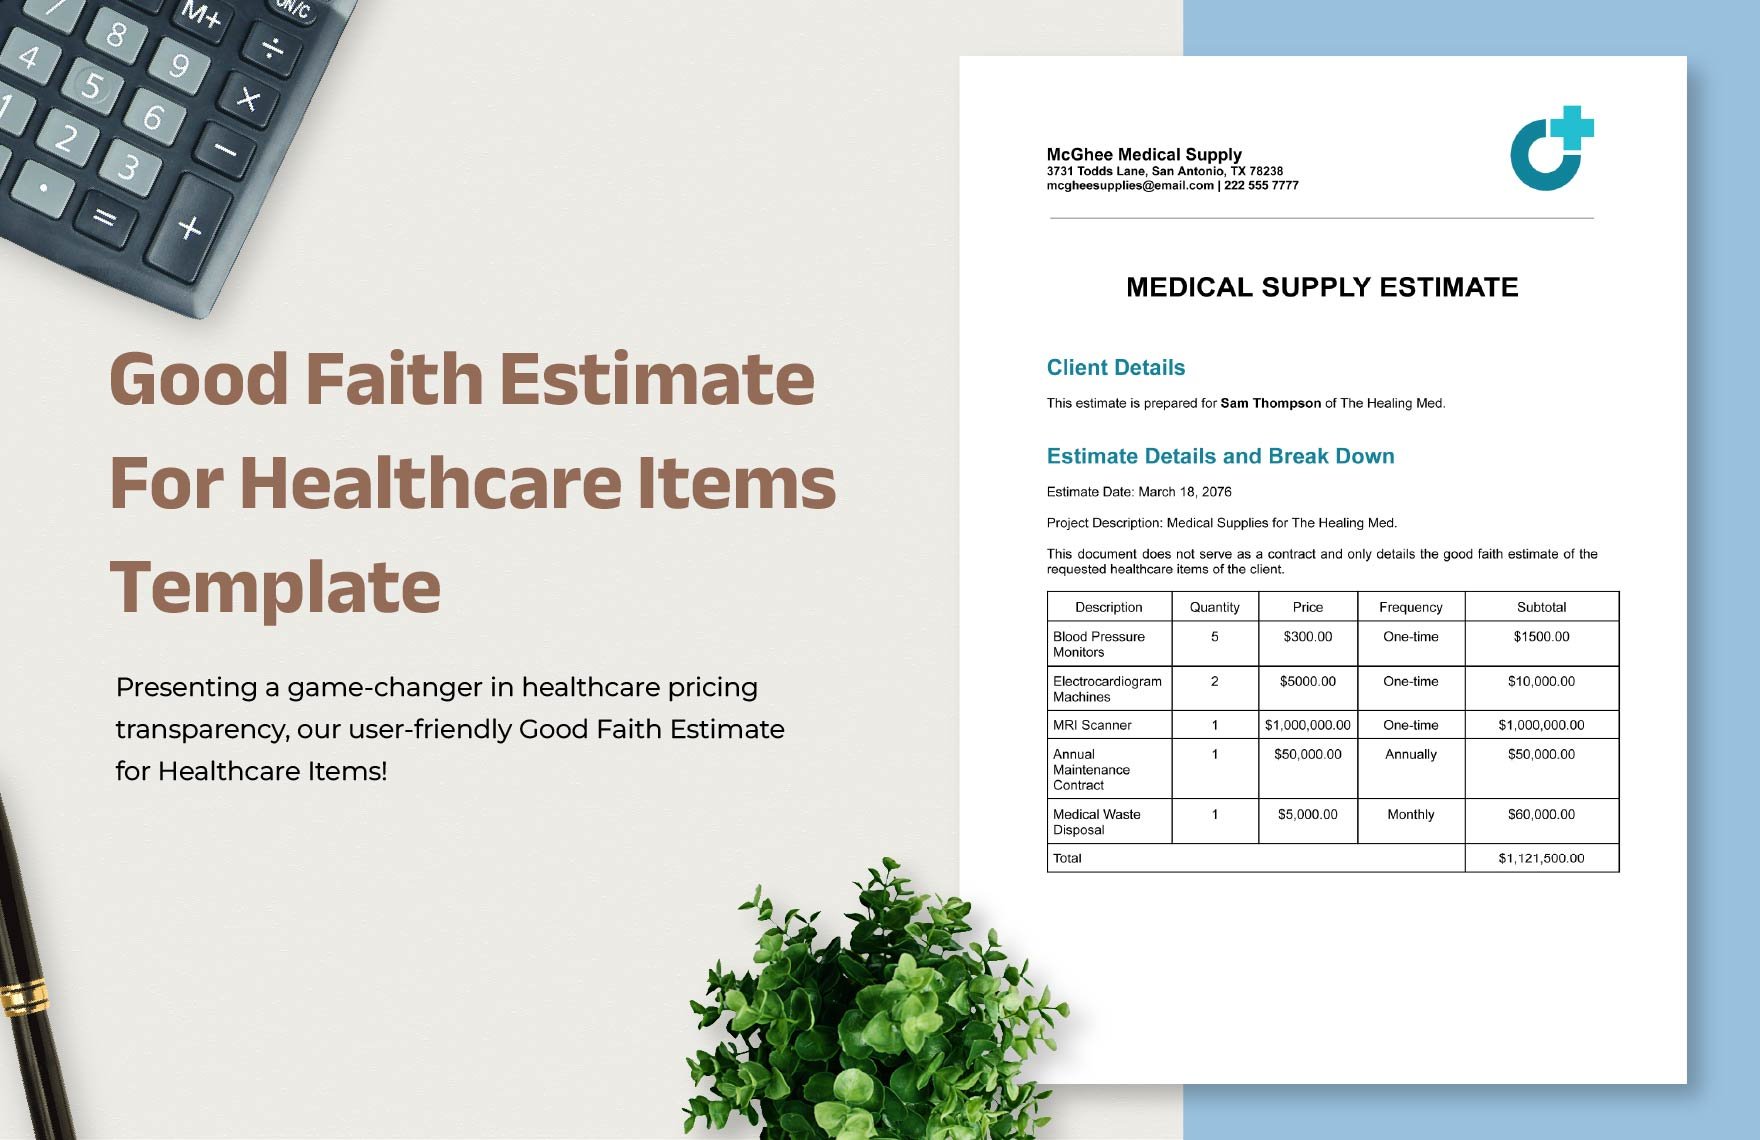 Good Faith Estimate for Healthcare Items Template